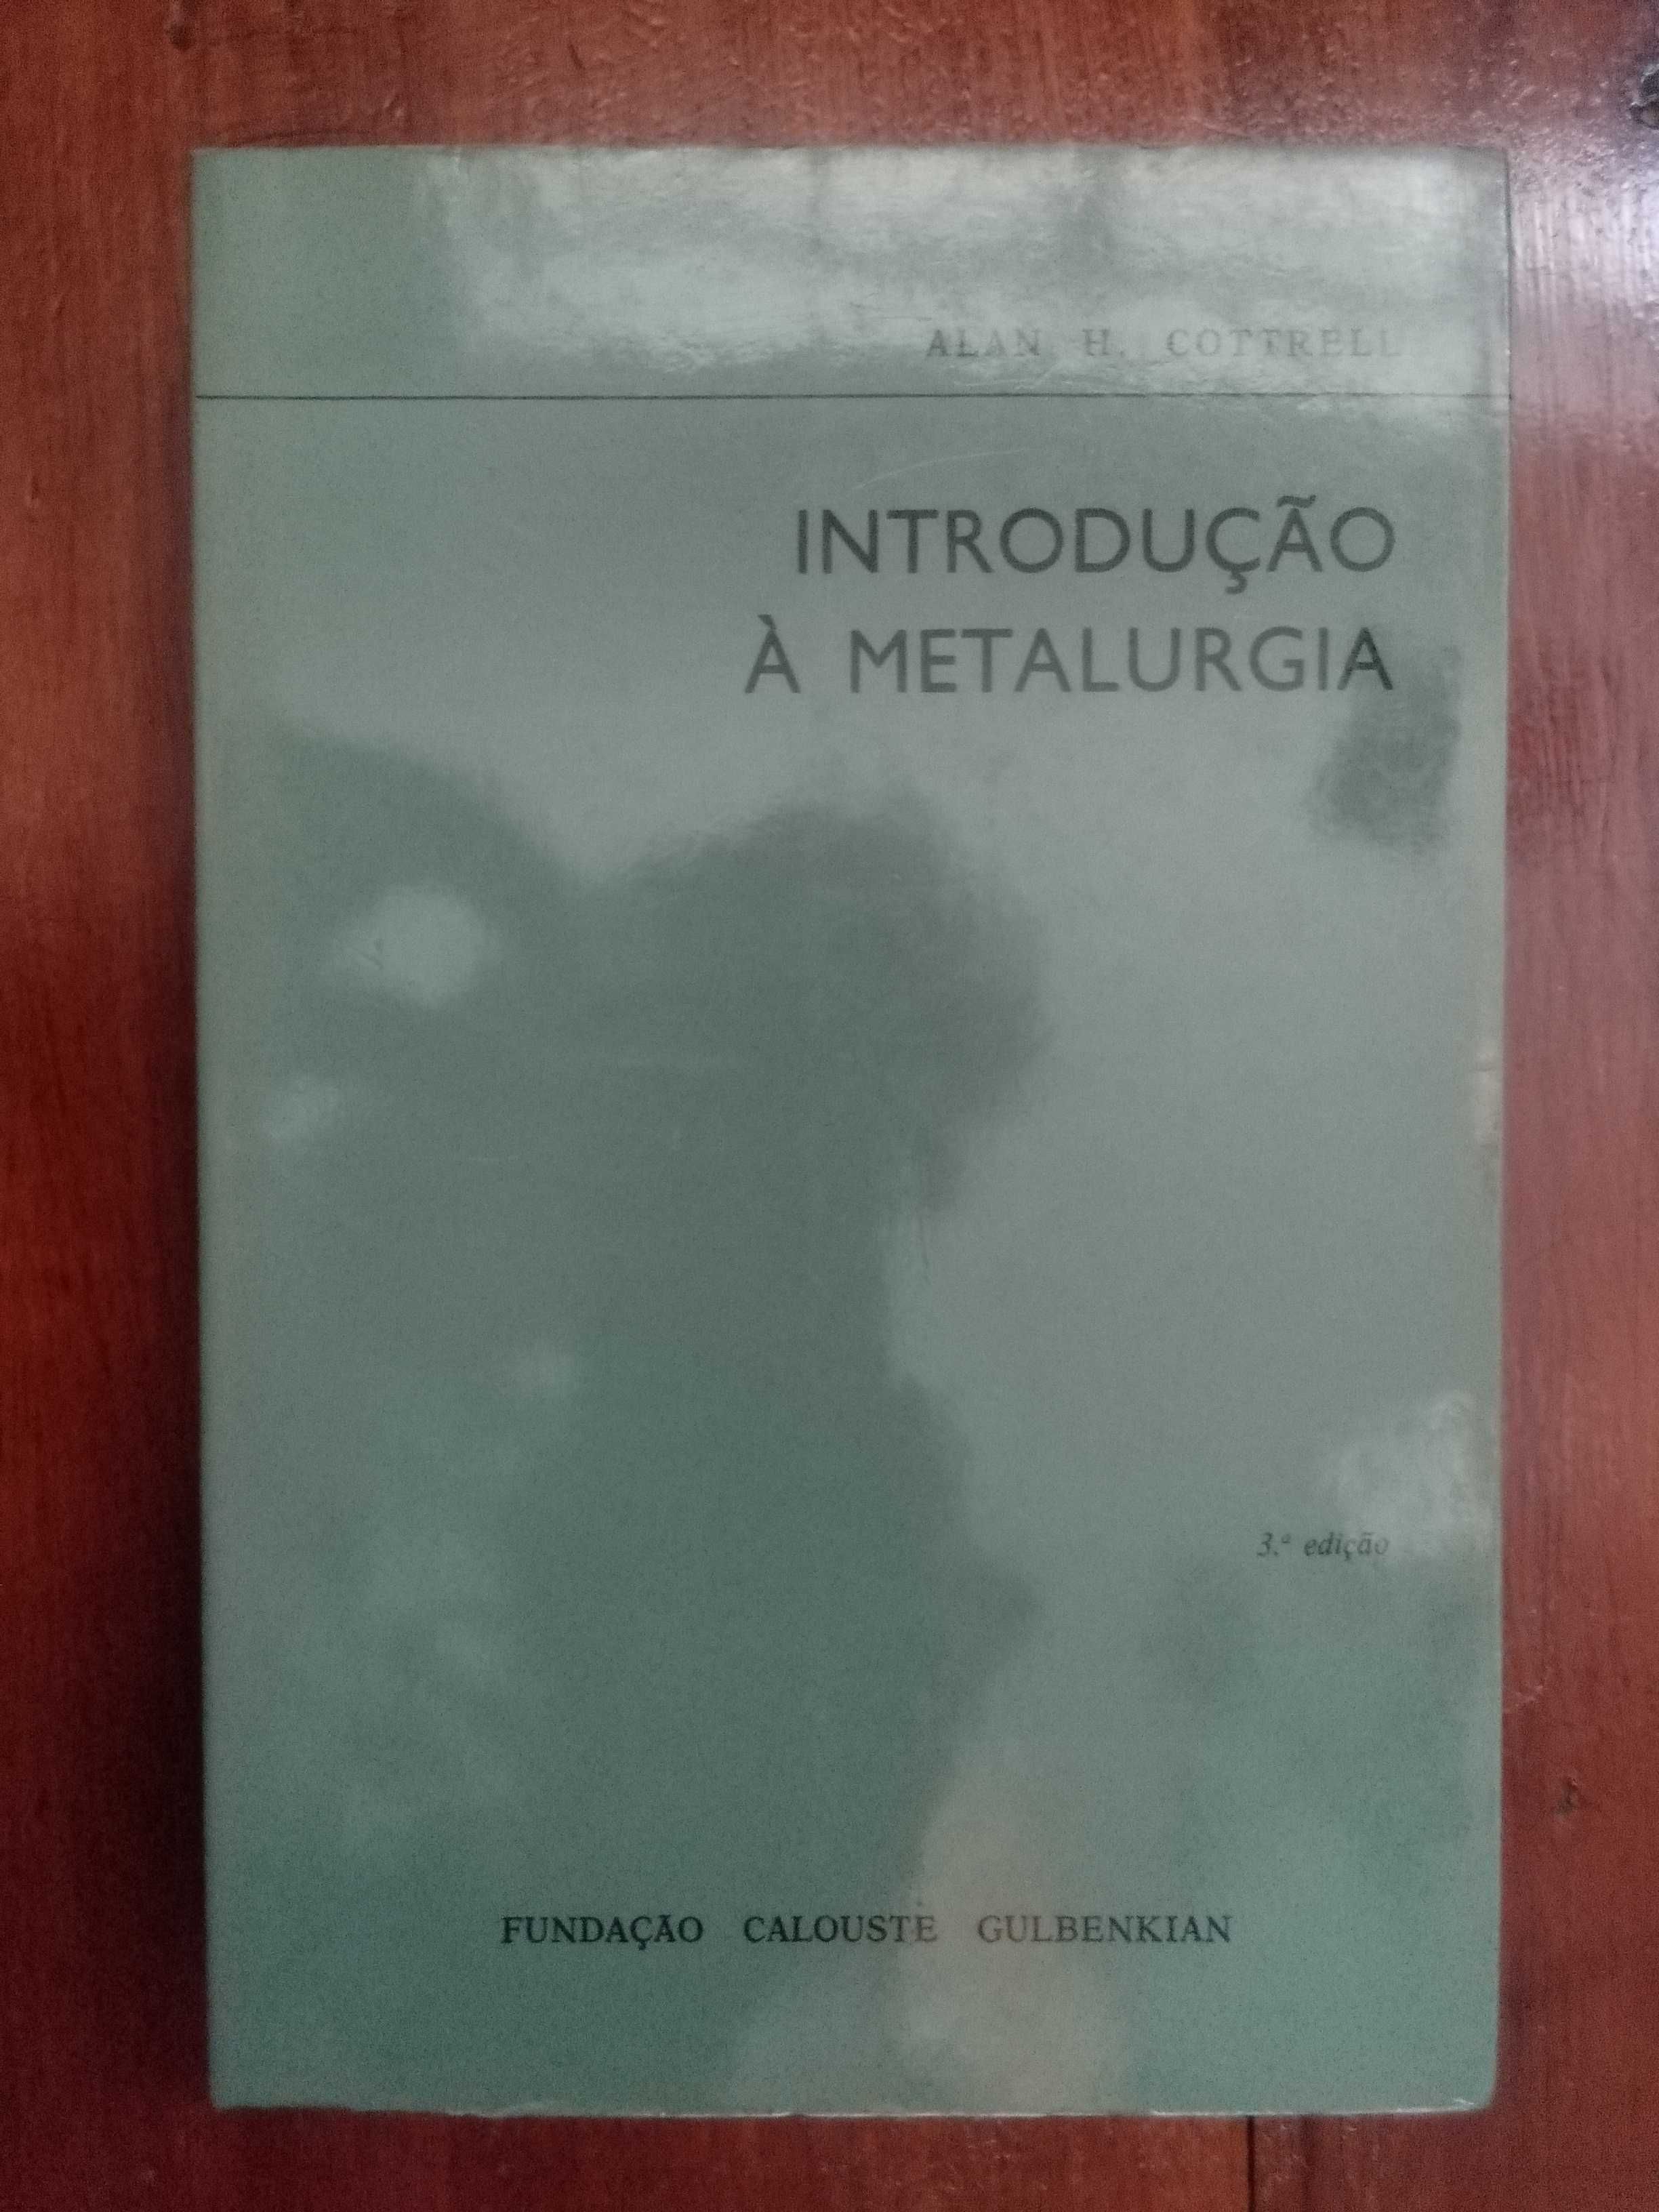 Alan H. Cottrell - Introdução à Metalurgia